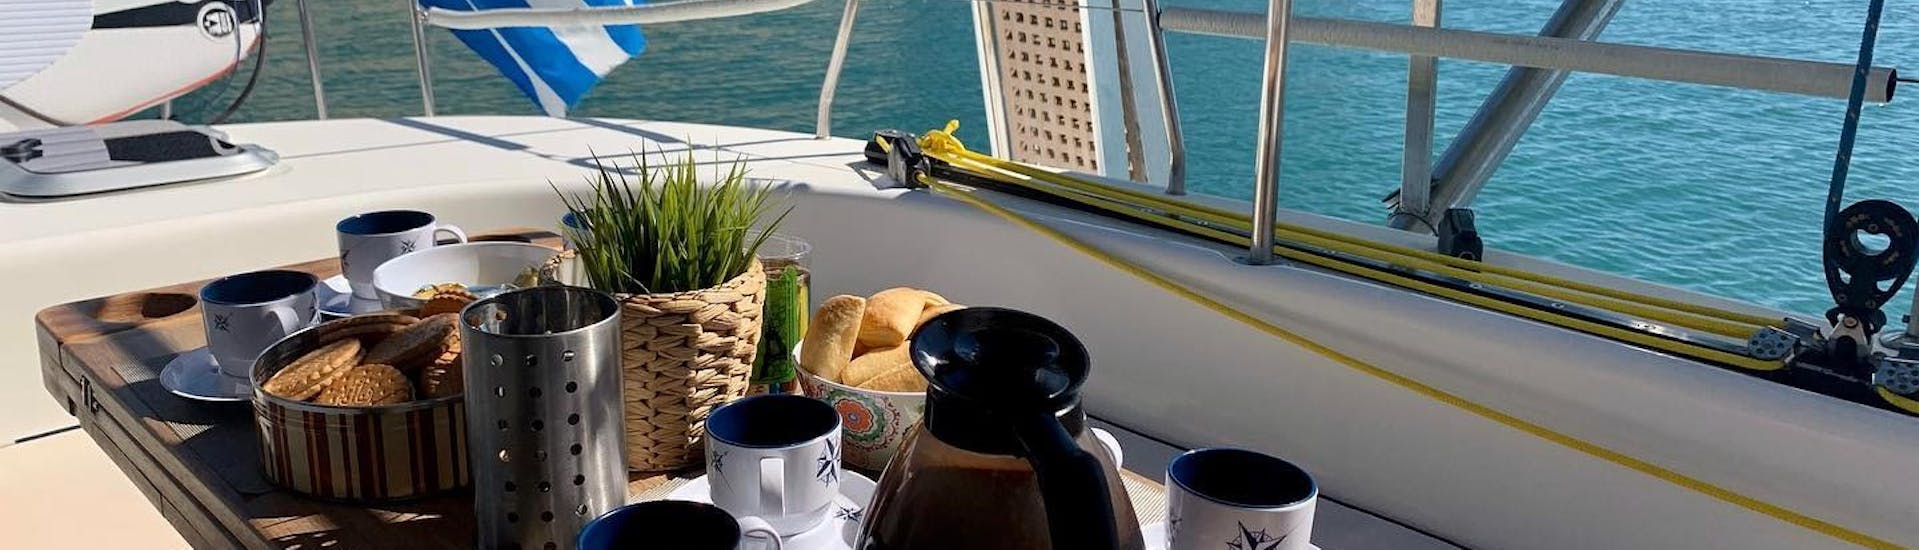 Het eten wordt geserveerd tijdens de catamarantocht van Agios Nikolaos naar de Mirabello Baai met Lunch.